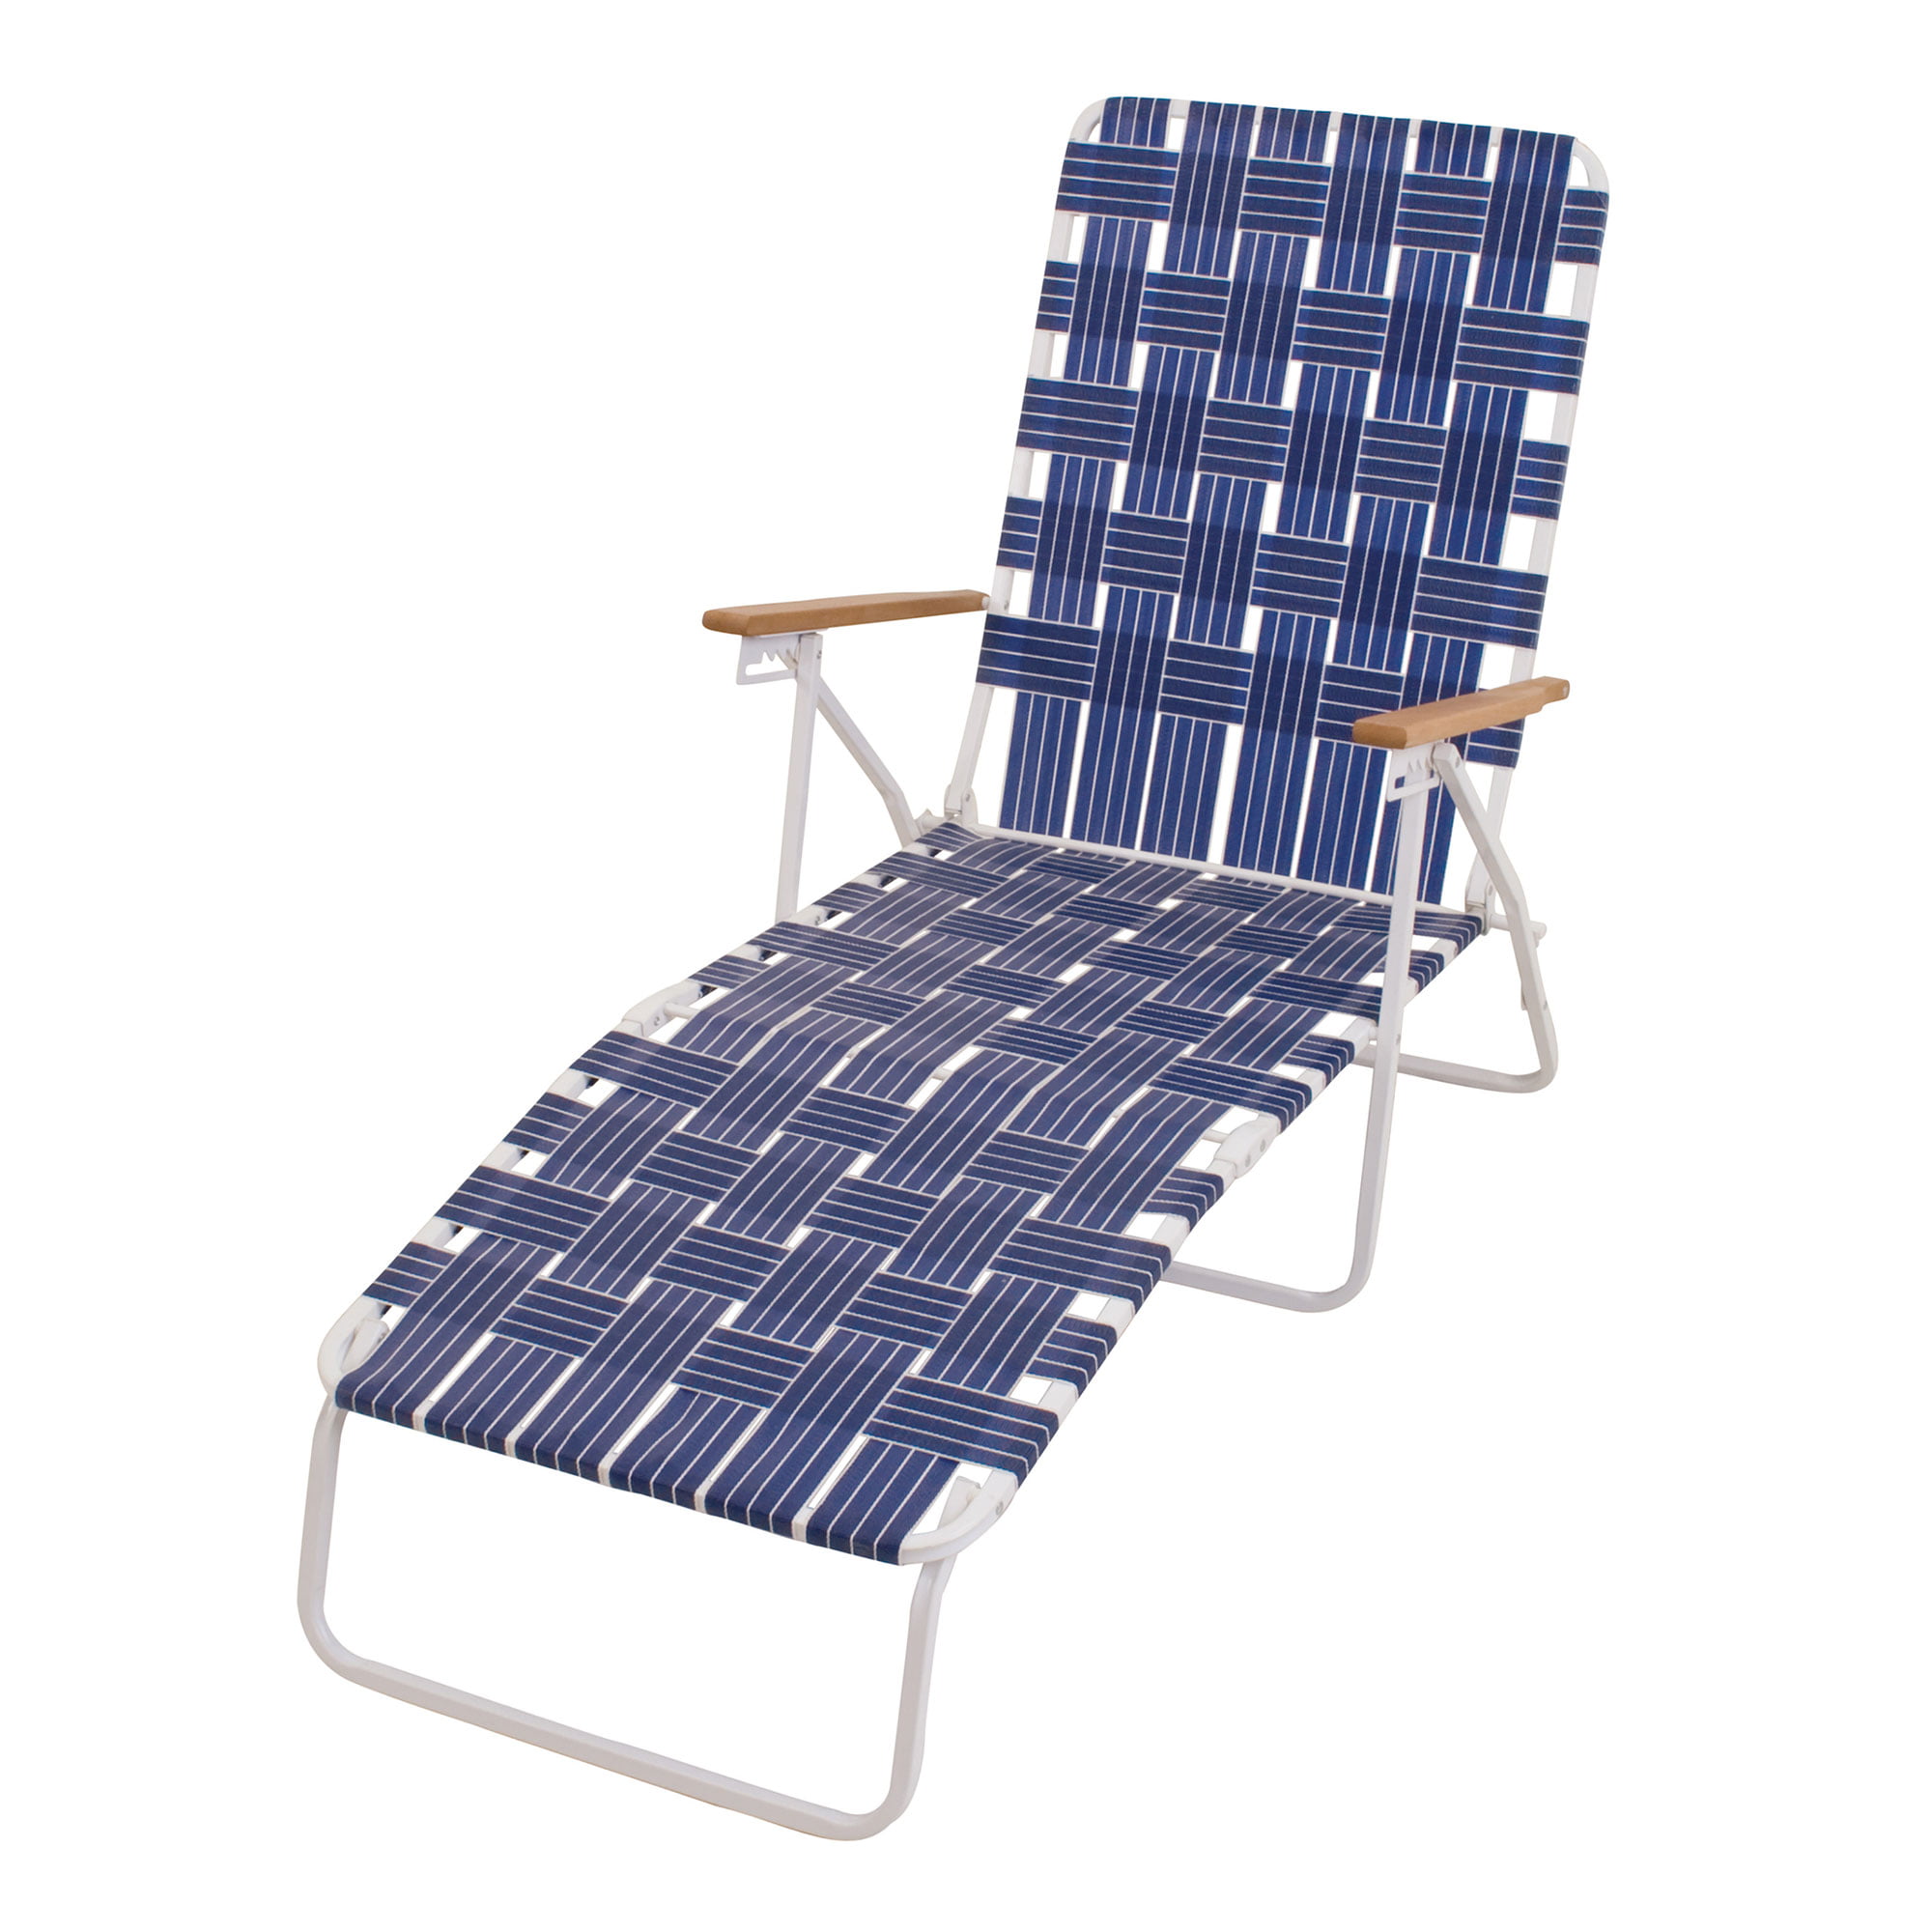 Folding Wooden Deckchair Garden Beach Seaside Deck Chair Blue up to 110 kgs 